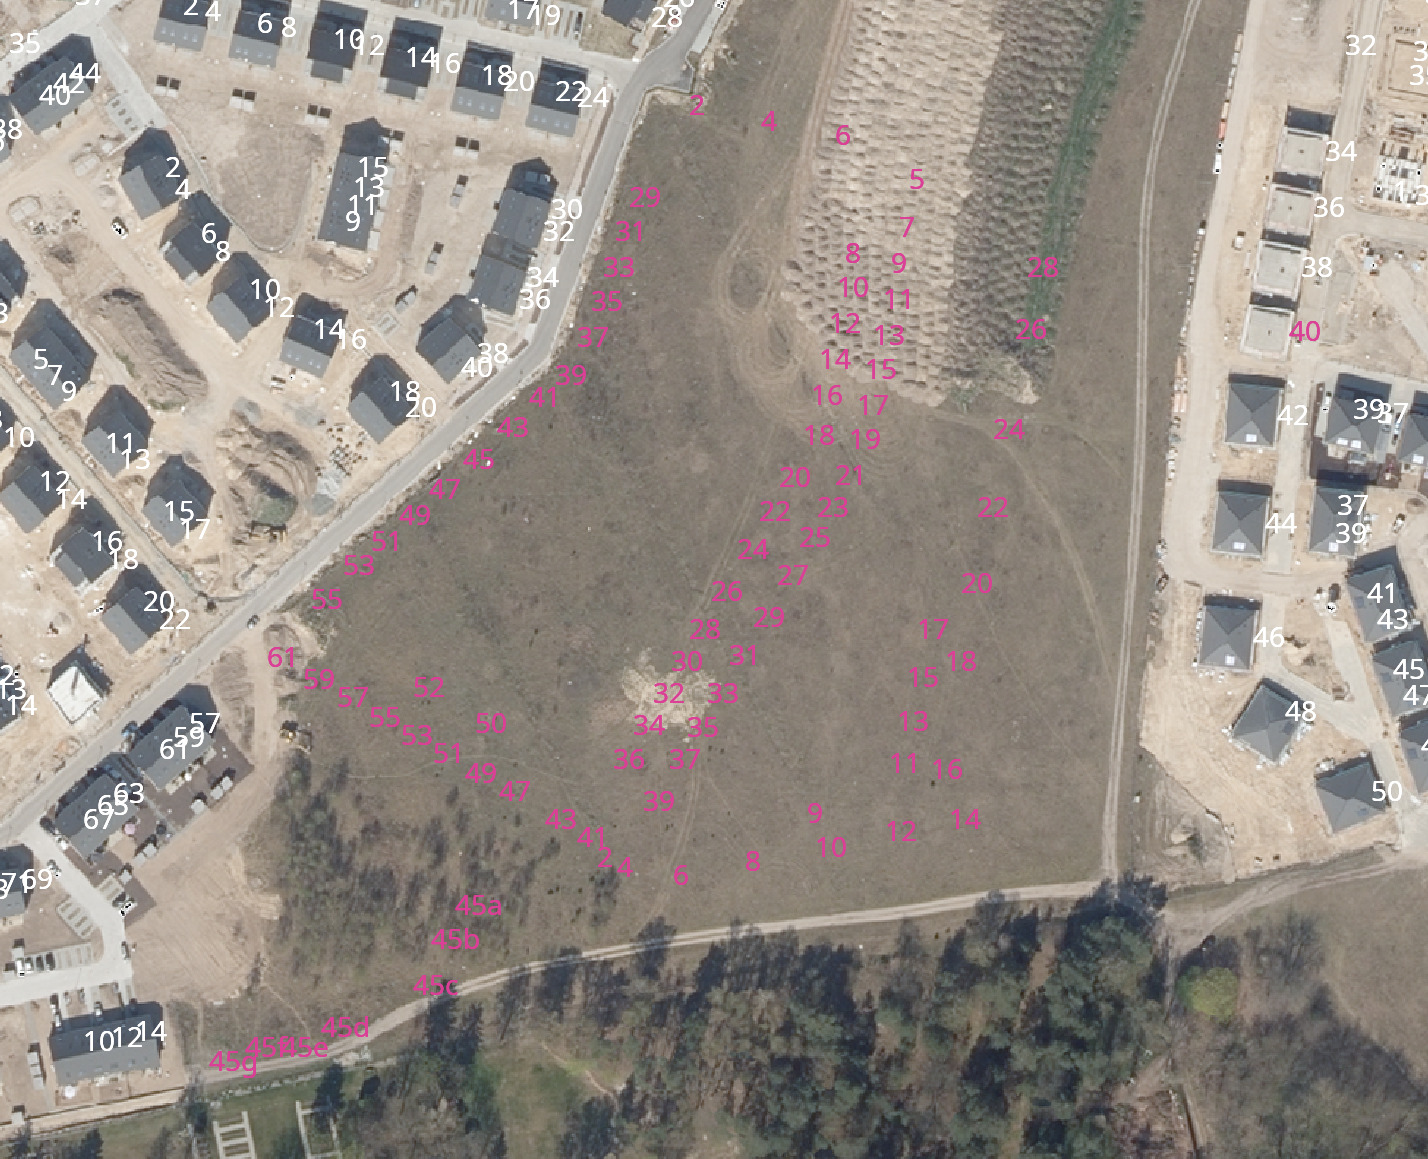 Luftbild eines Neubaugebiets, in dem noch keine Häuser zu sehen sind. Viele Hausnummern sind schon offiziell zugeteilt, aber noch nicht in OSM erfasst